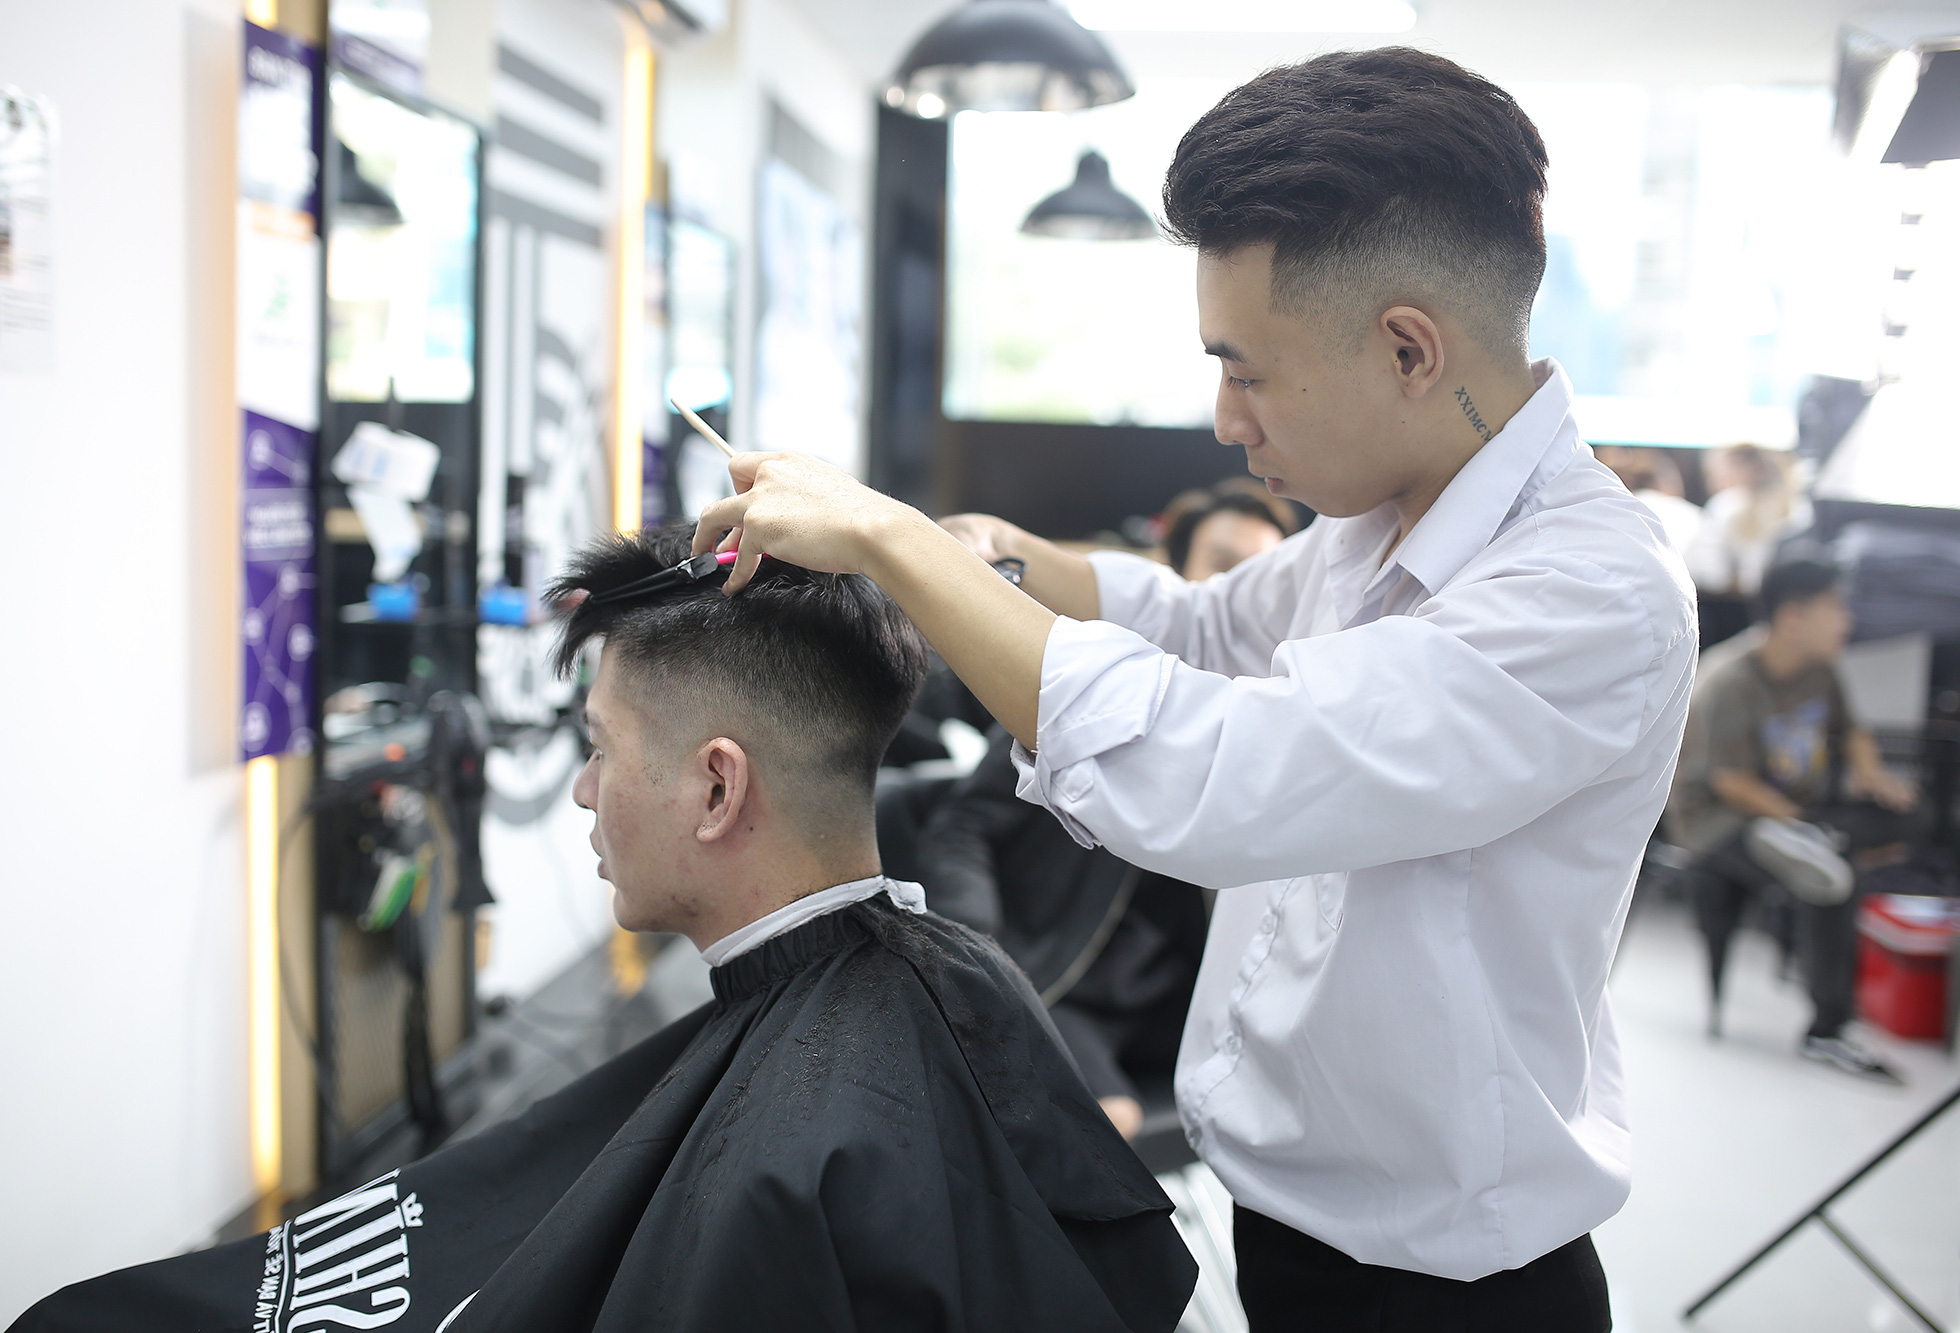 Tuyển Thợ cắt tóc không yêu cầu kinh nghiệm lương thợ cắt tóc nam nữ   Joboko